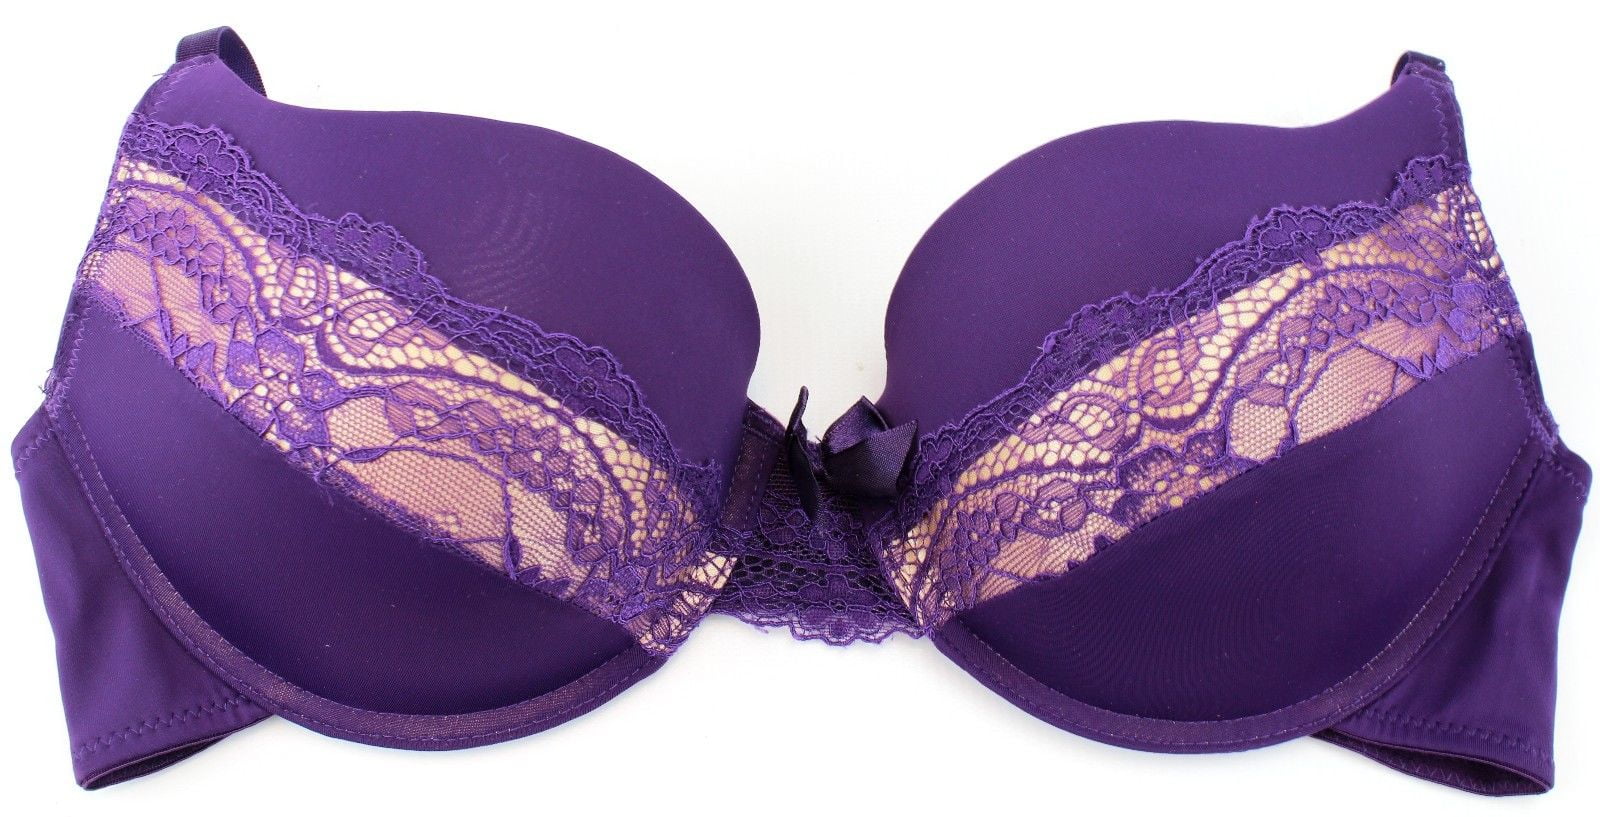 Felina Extreme Push-up Purple Lace 36B Bra Add 1 Cup Size Style F5150